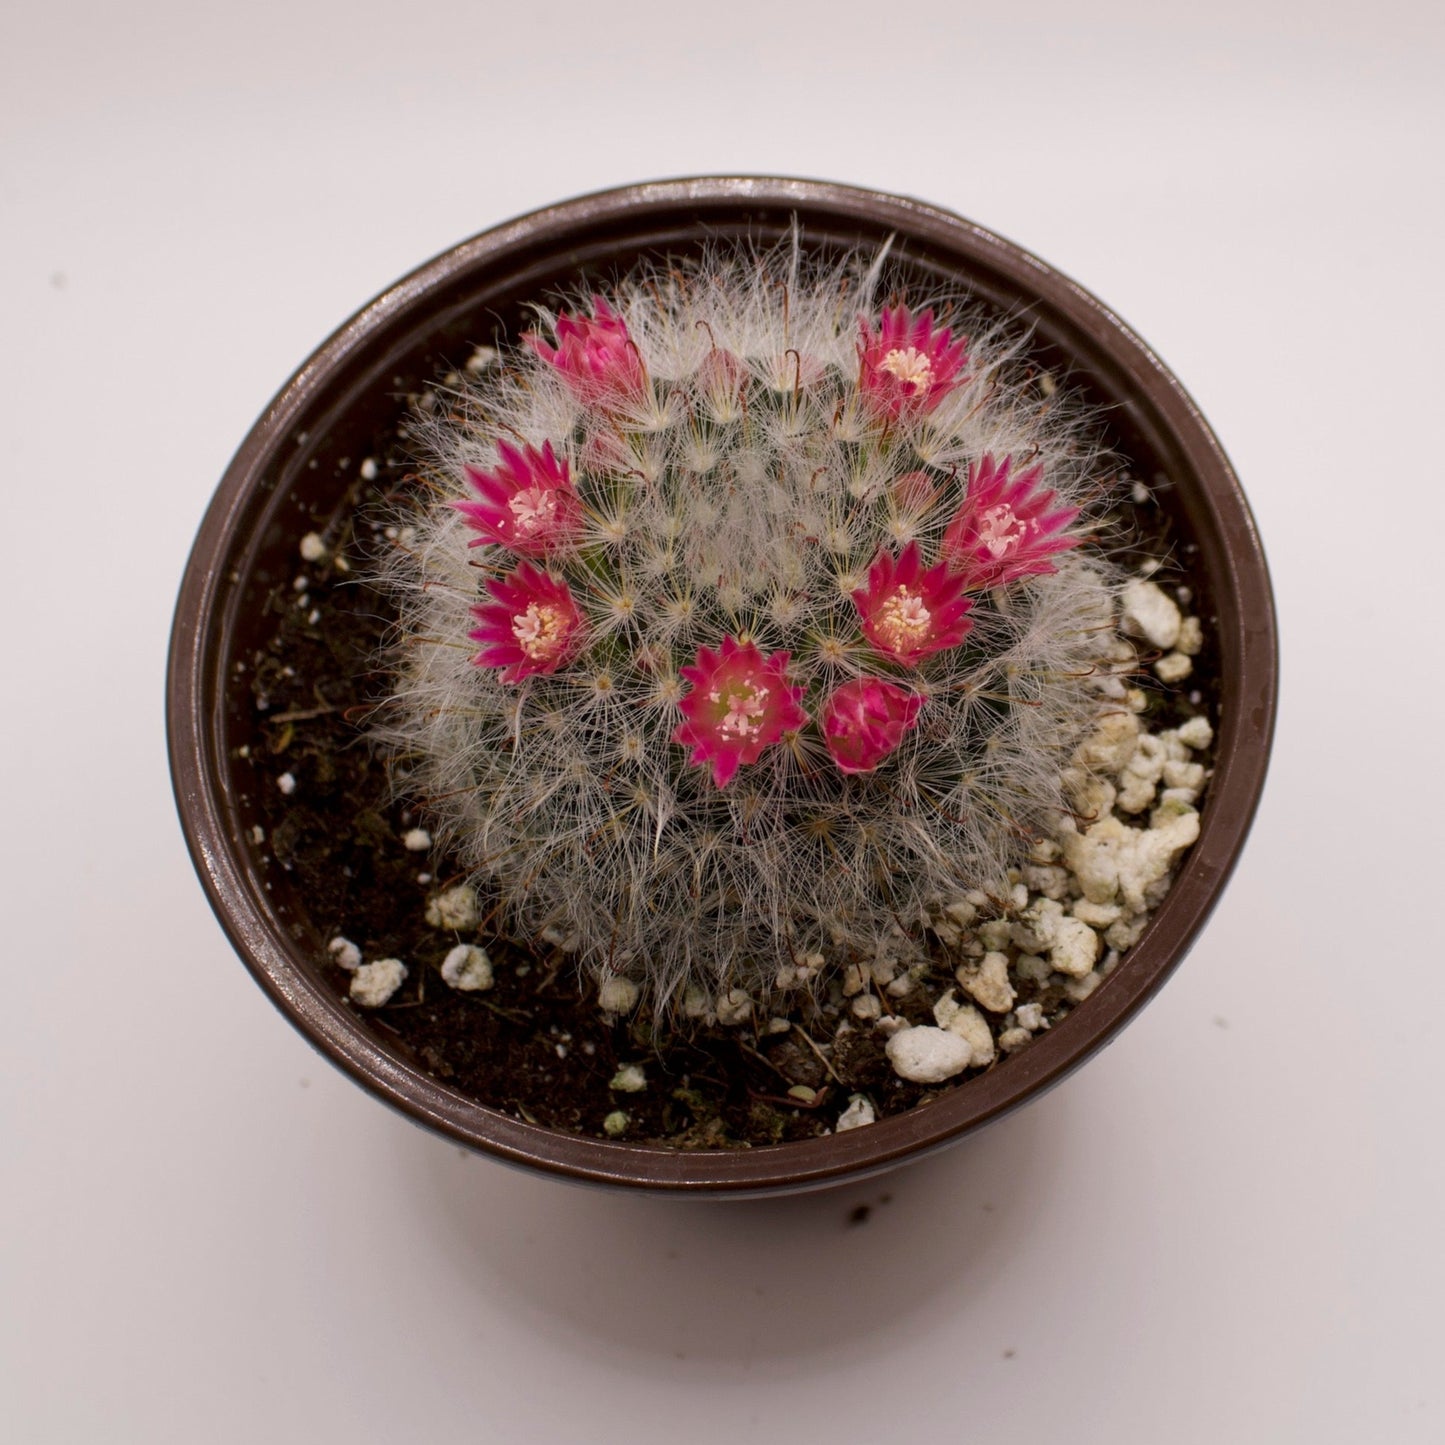 Mammillaria Powder Puff Cactus